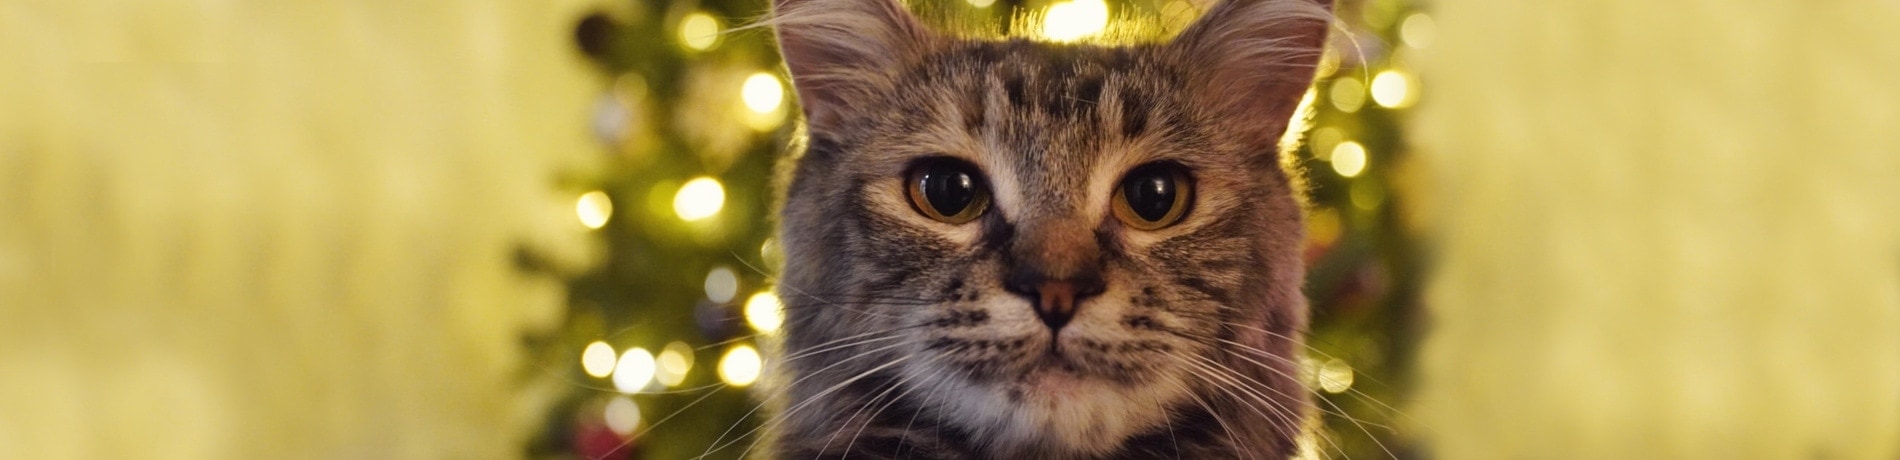 Kerstboom tegen katten beschermen: 6 tips!